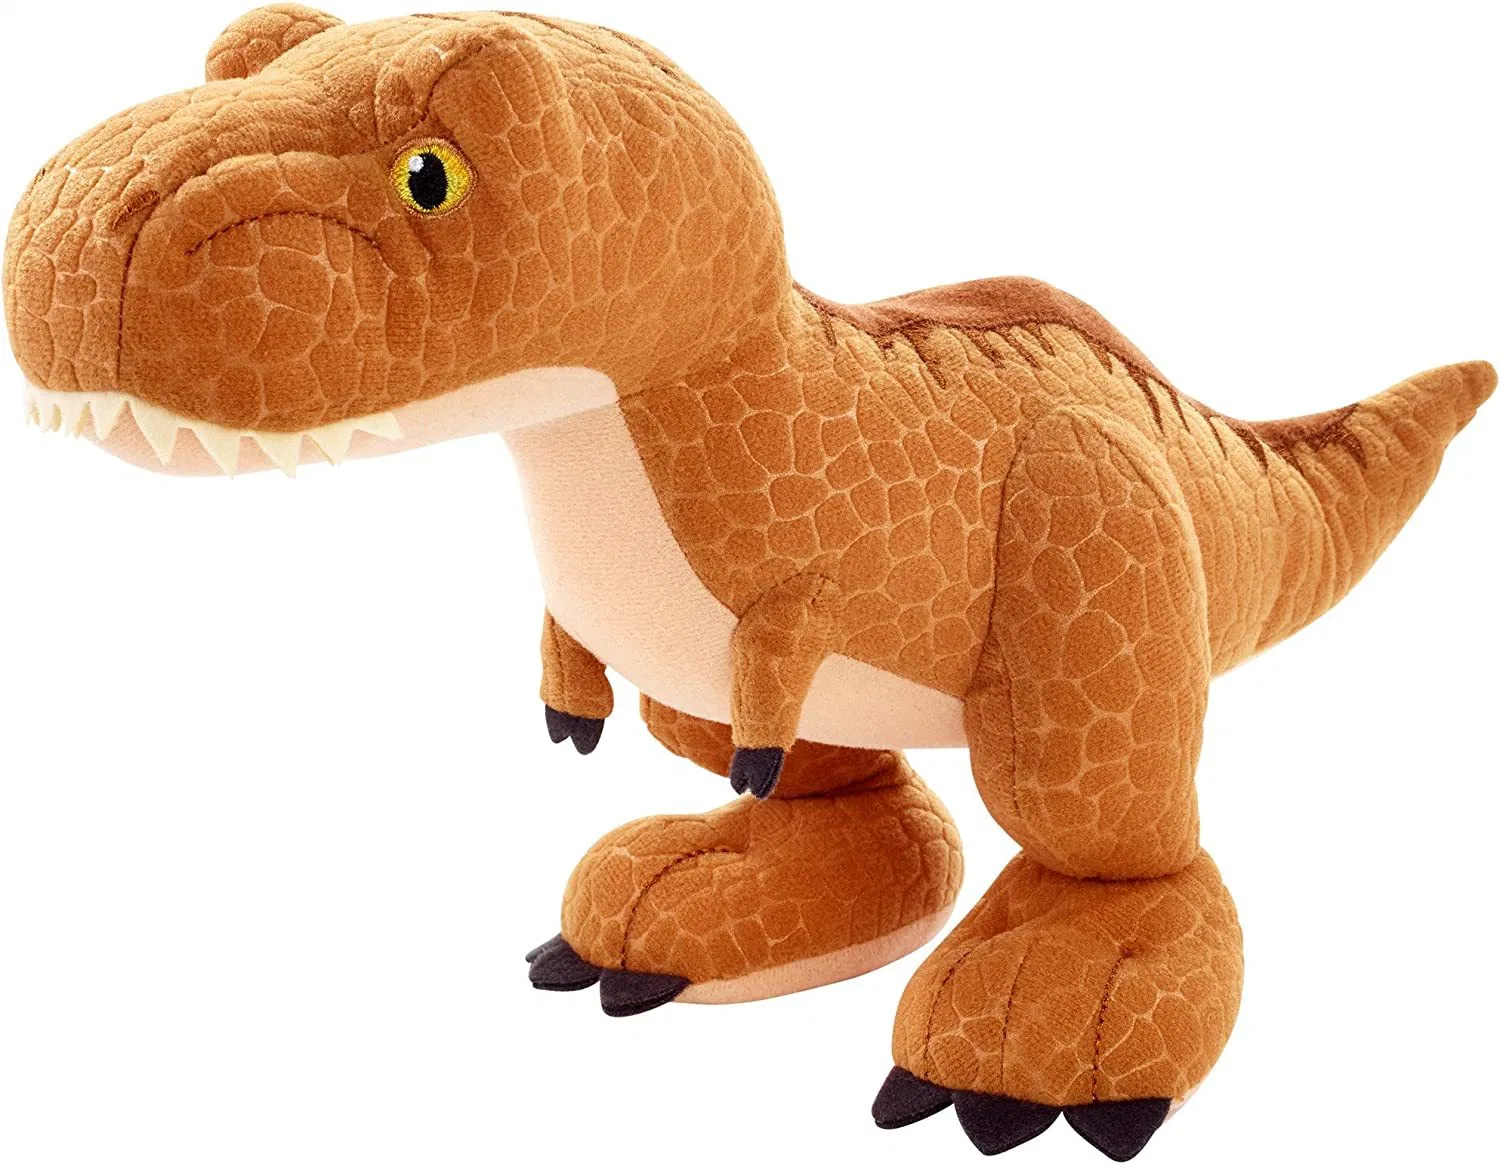 Nouveau design Dinosaur pesé peluche jouets pour enfants